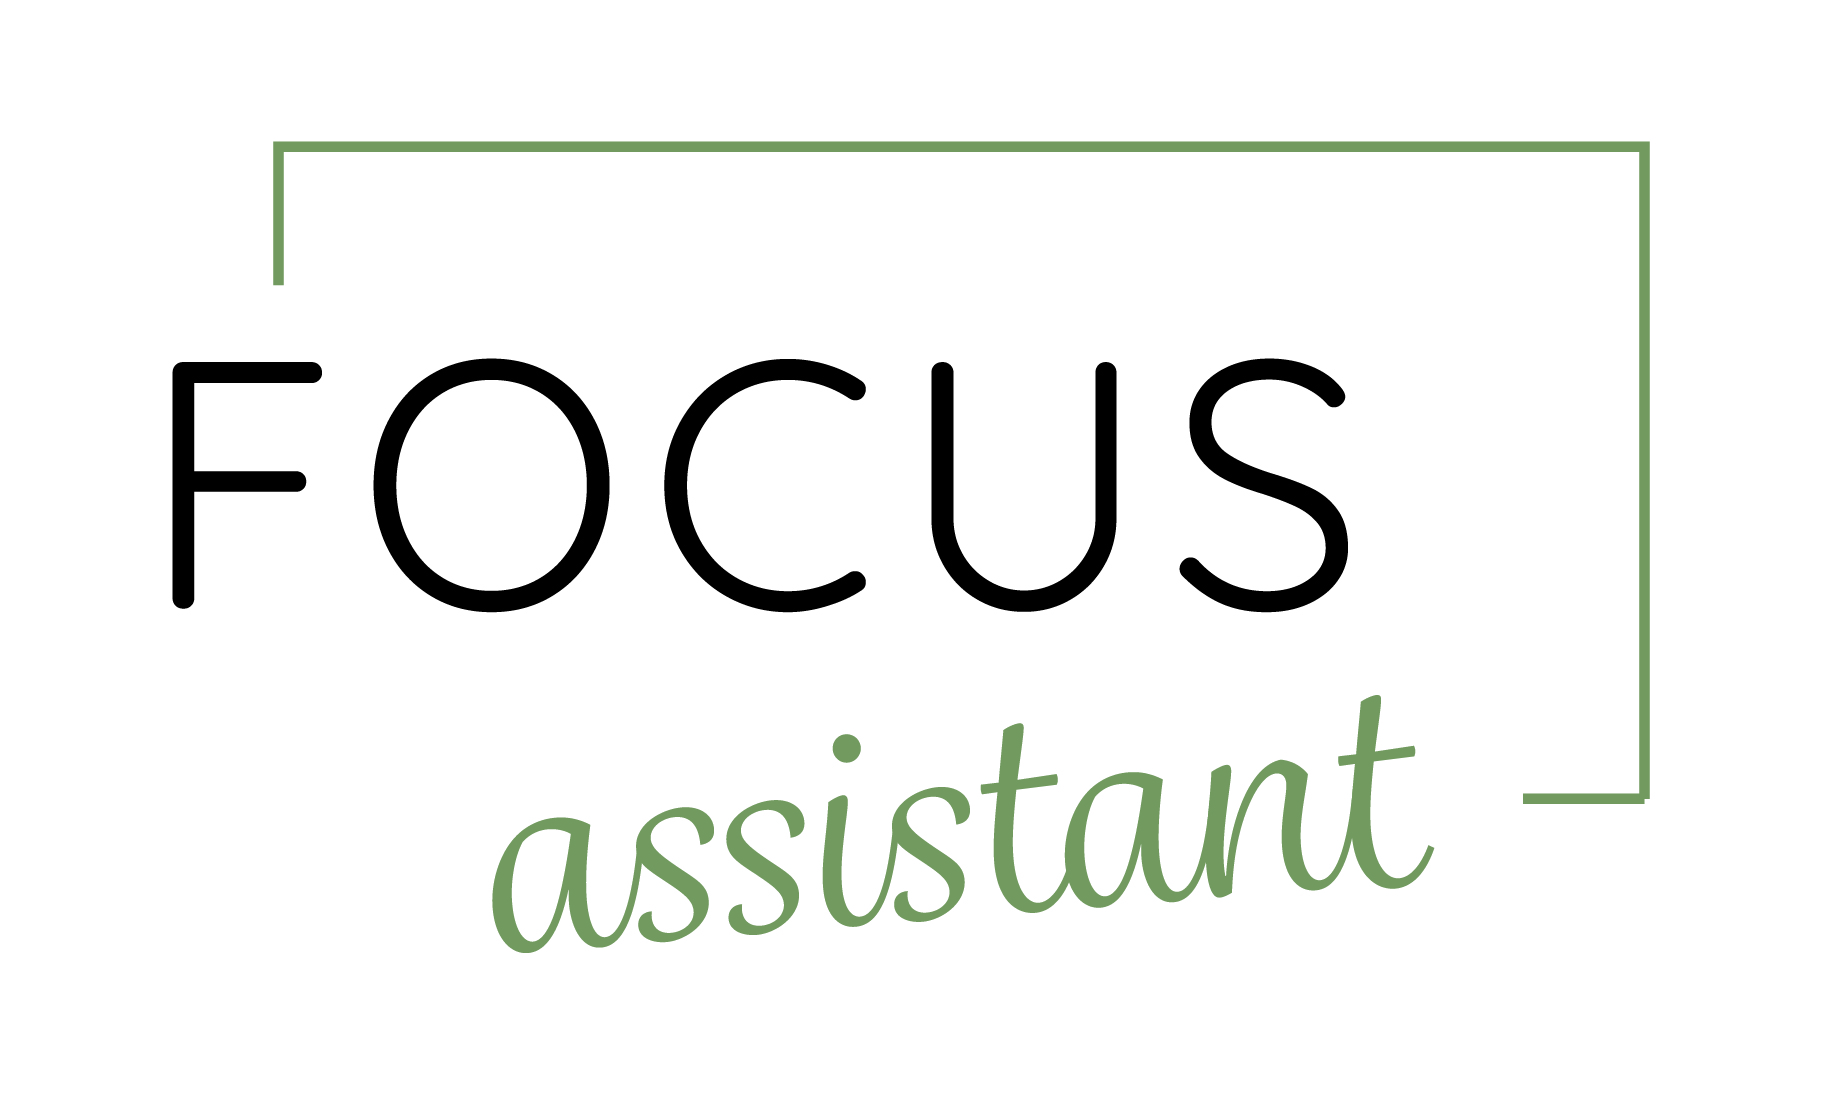 Focus assistant - Virtual Assistant